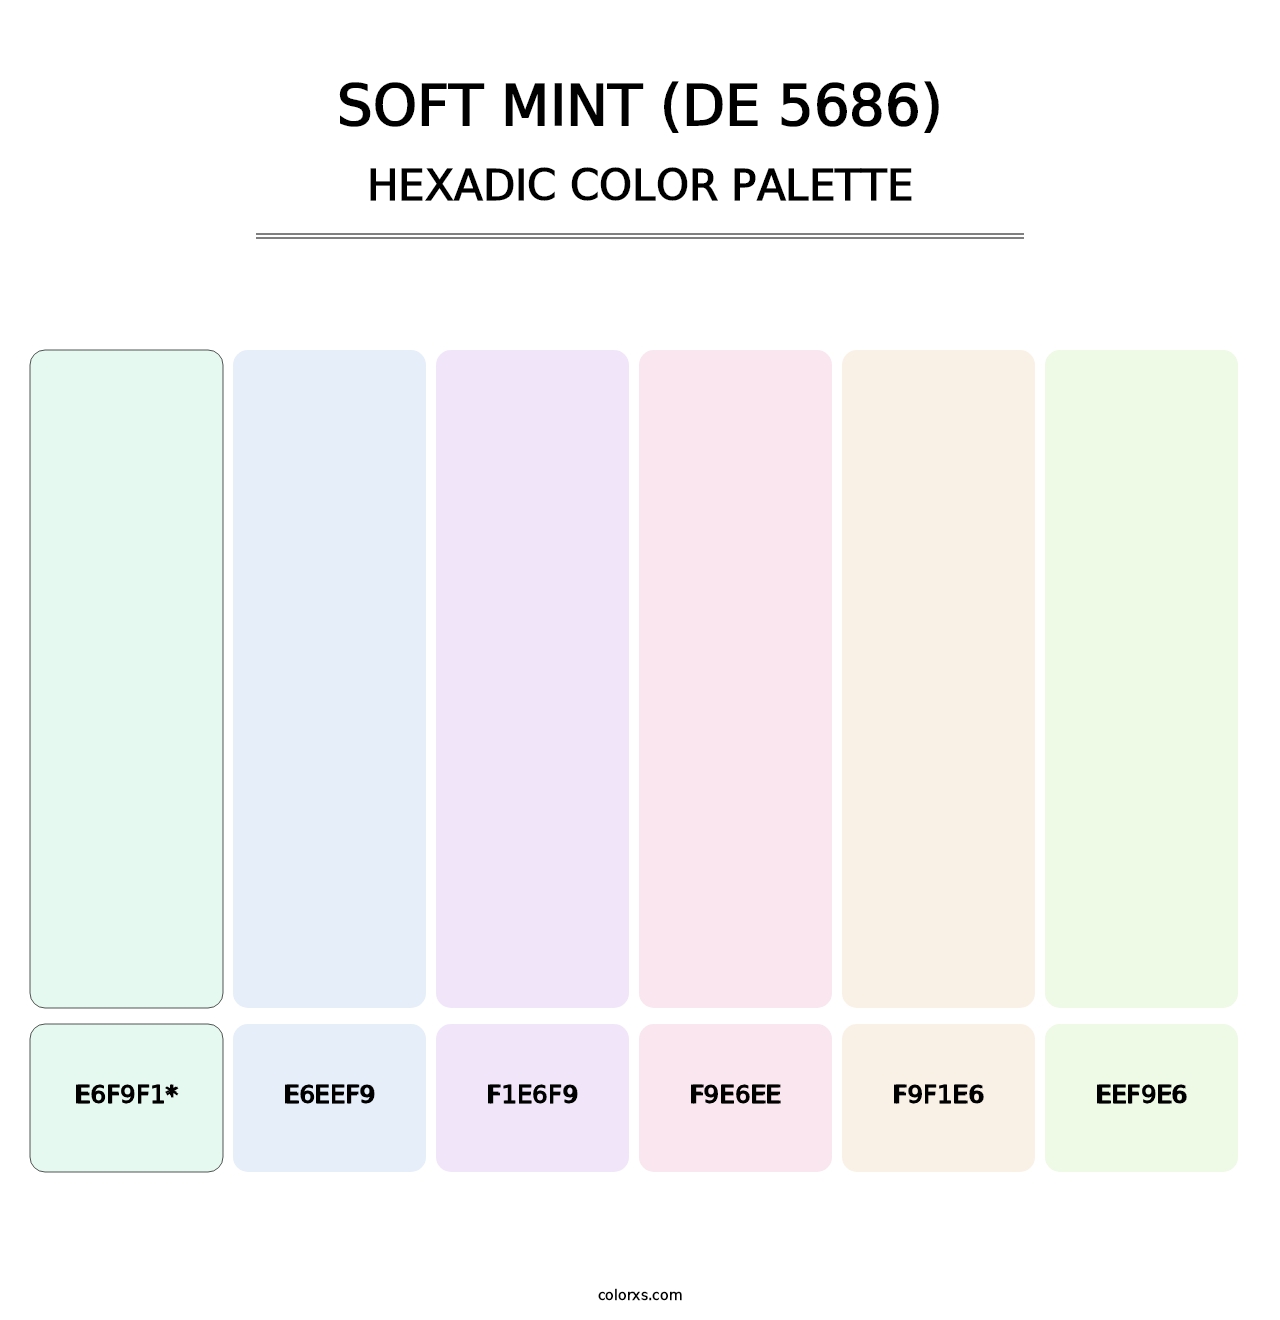 Soft Mint (DE 5686) - Hexadic Color Palette